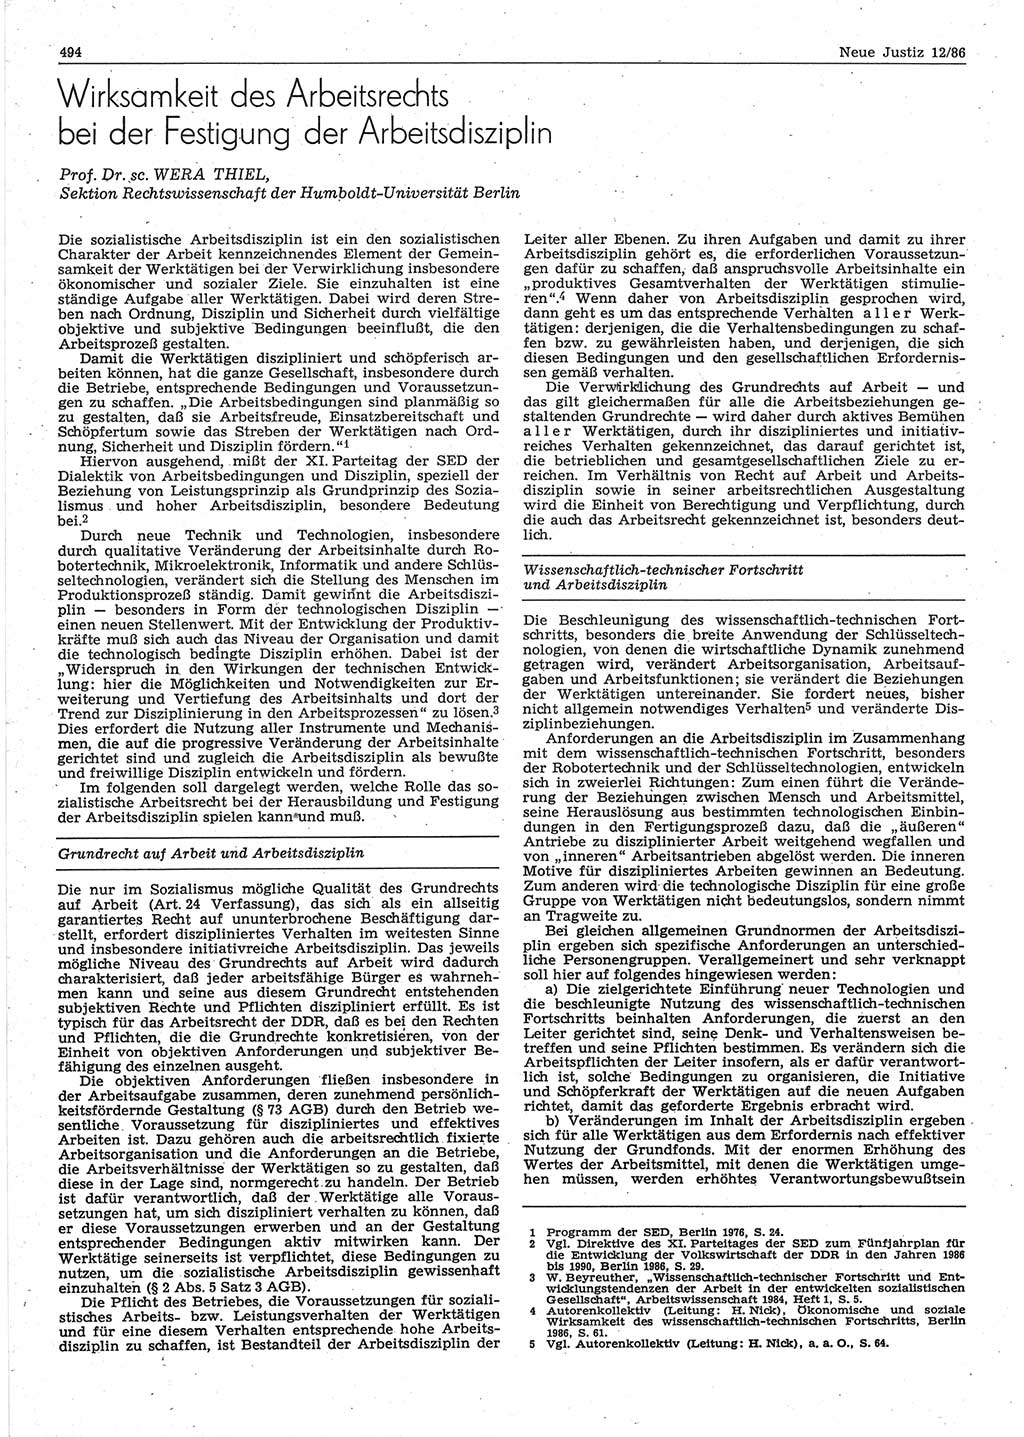 Neue Justiz (NJ), Zeitschrift für sozialistisches Recht und Gesetzlichkeit [Deutsche Demokratische Republik (DDR)], 40. Jahrgang 1986, Seite 494 (NJ DDR 1986, S. 494)